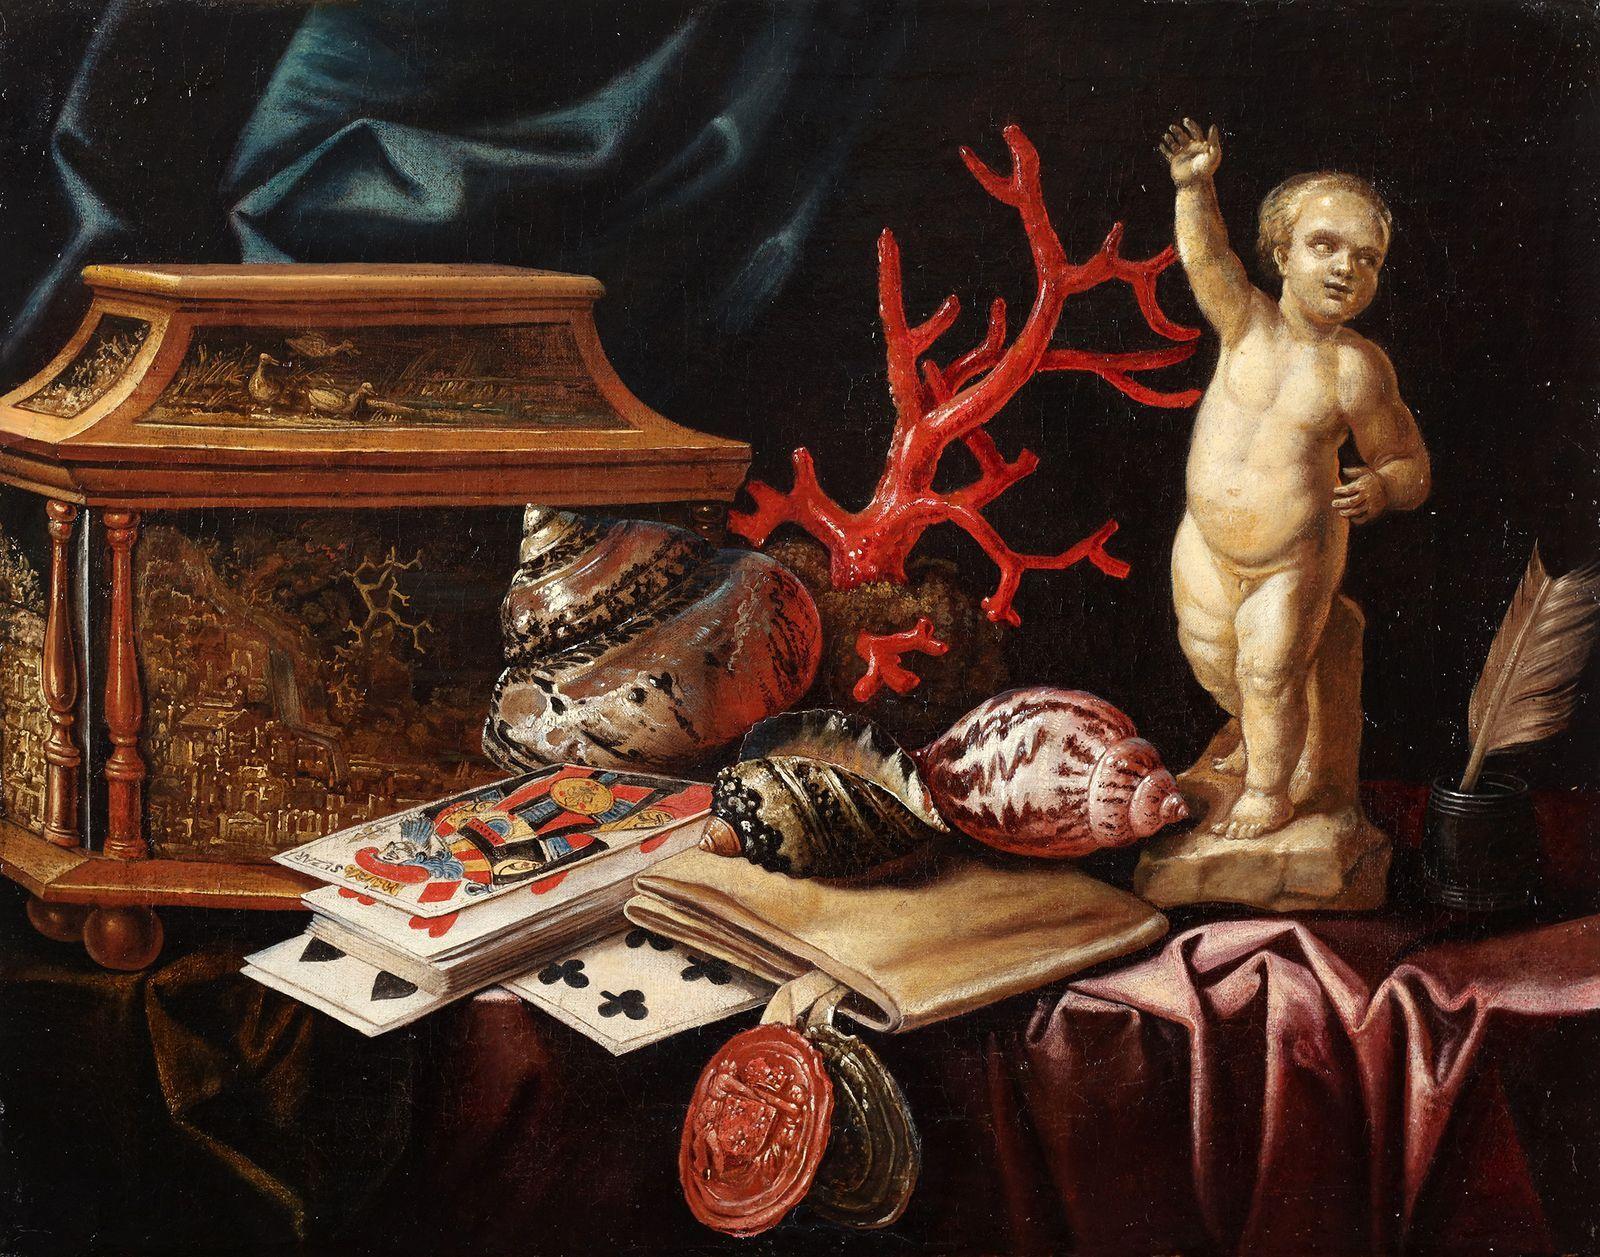 Stilleben mit Spielkarten, Korallen, Muscheln, einer Schmuckschatulle und einer Steinskulptur

Öl auf Leinwand

Wir möchten uns bei Dr. Fred Meijer für seinen Hinweis.

Carstian Luyckx war ein flämischer Künstler des 17. Jahrhunderts. Auf diesem